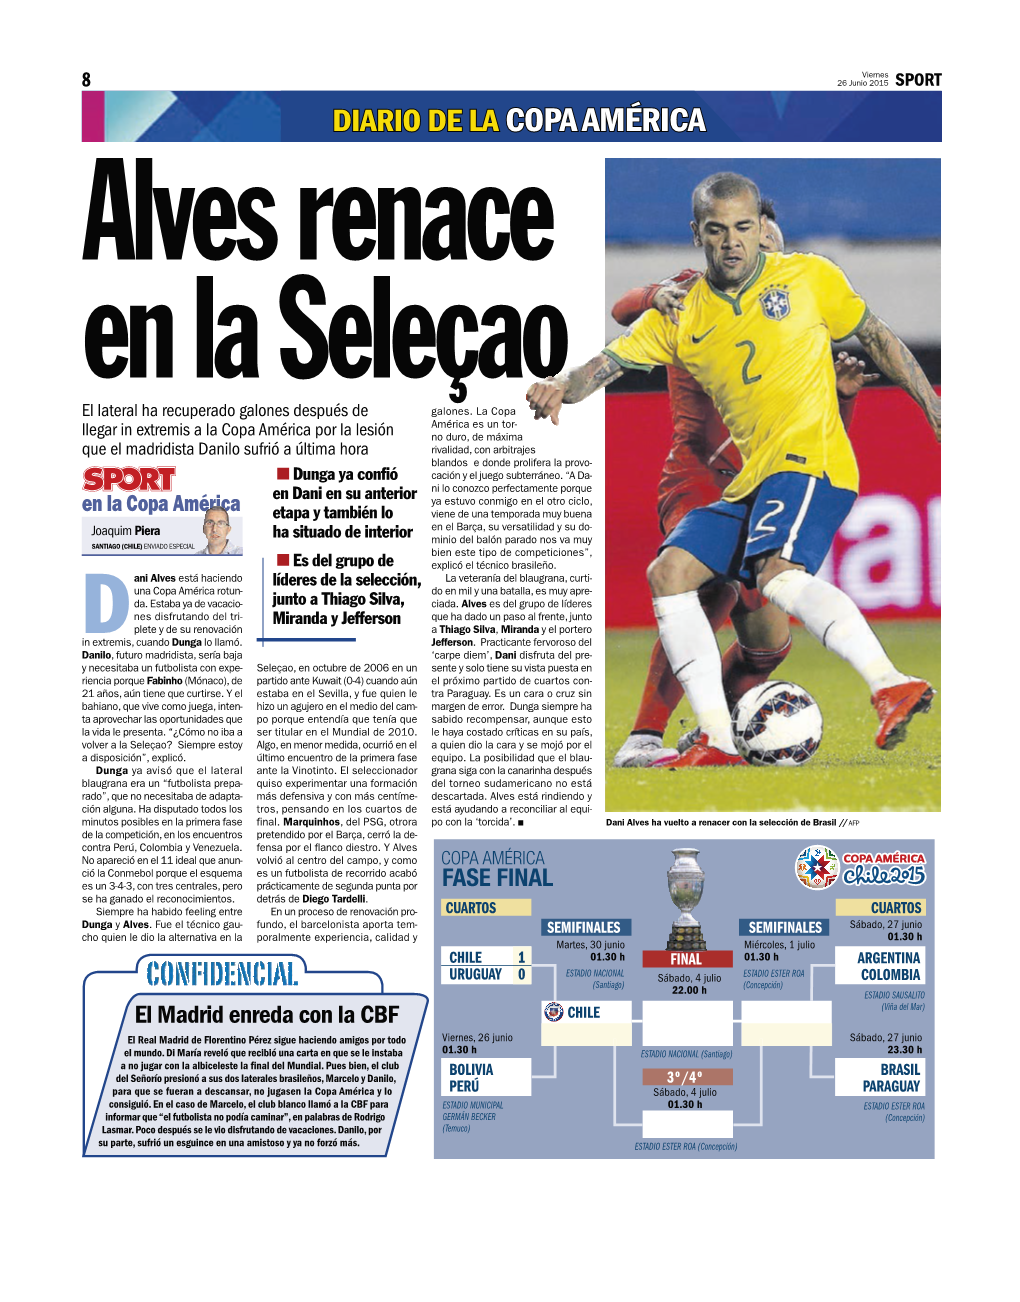 Diario De La Copa América Alves Renace En La Seleçao El Lateral Ha Recuperado Galones Después De Galones